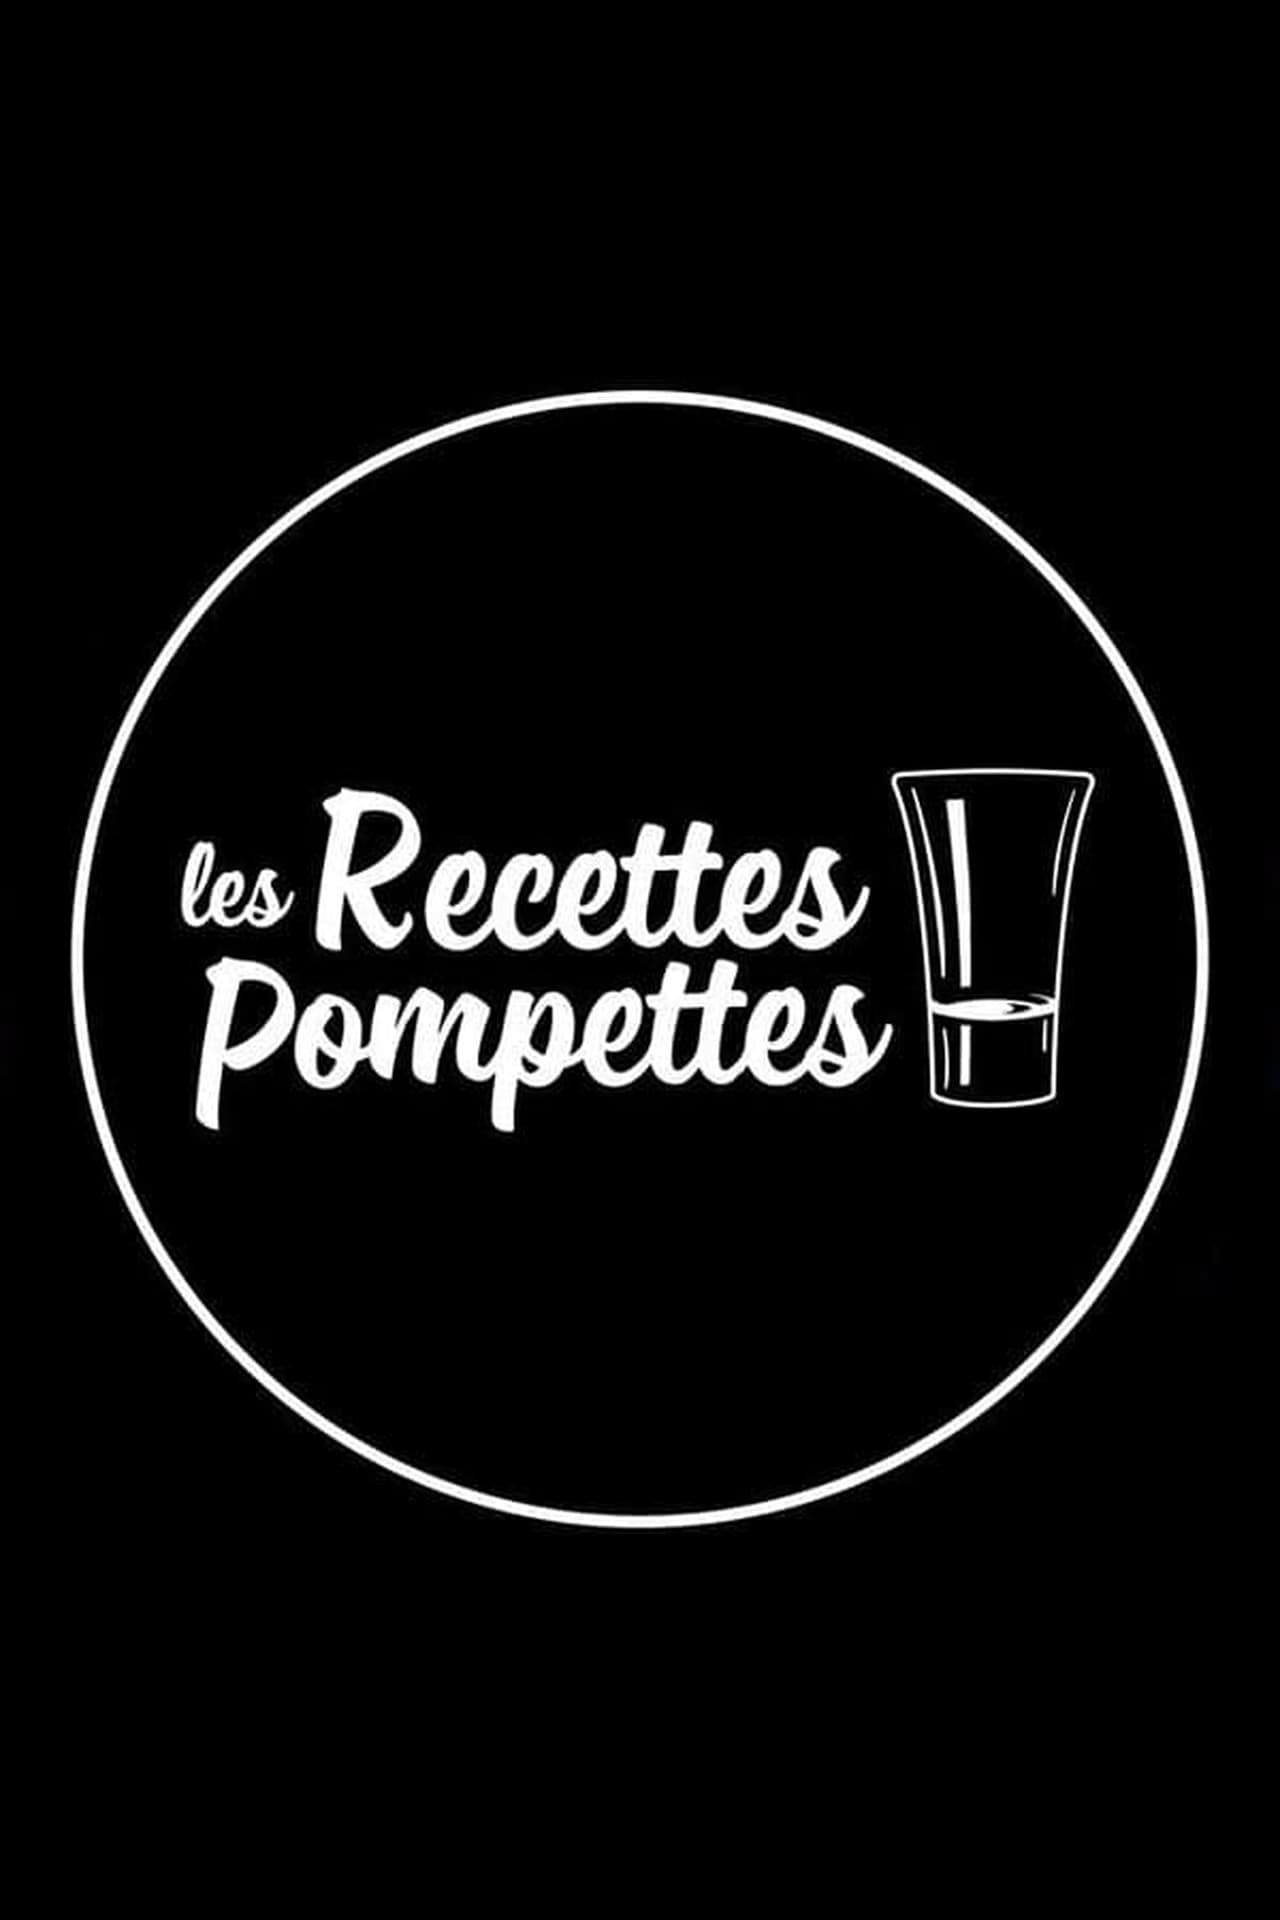 Les recettes pompettes by Poulpe